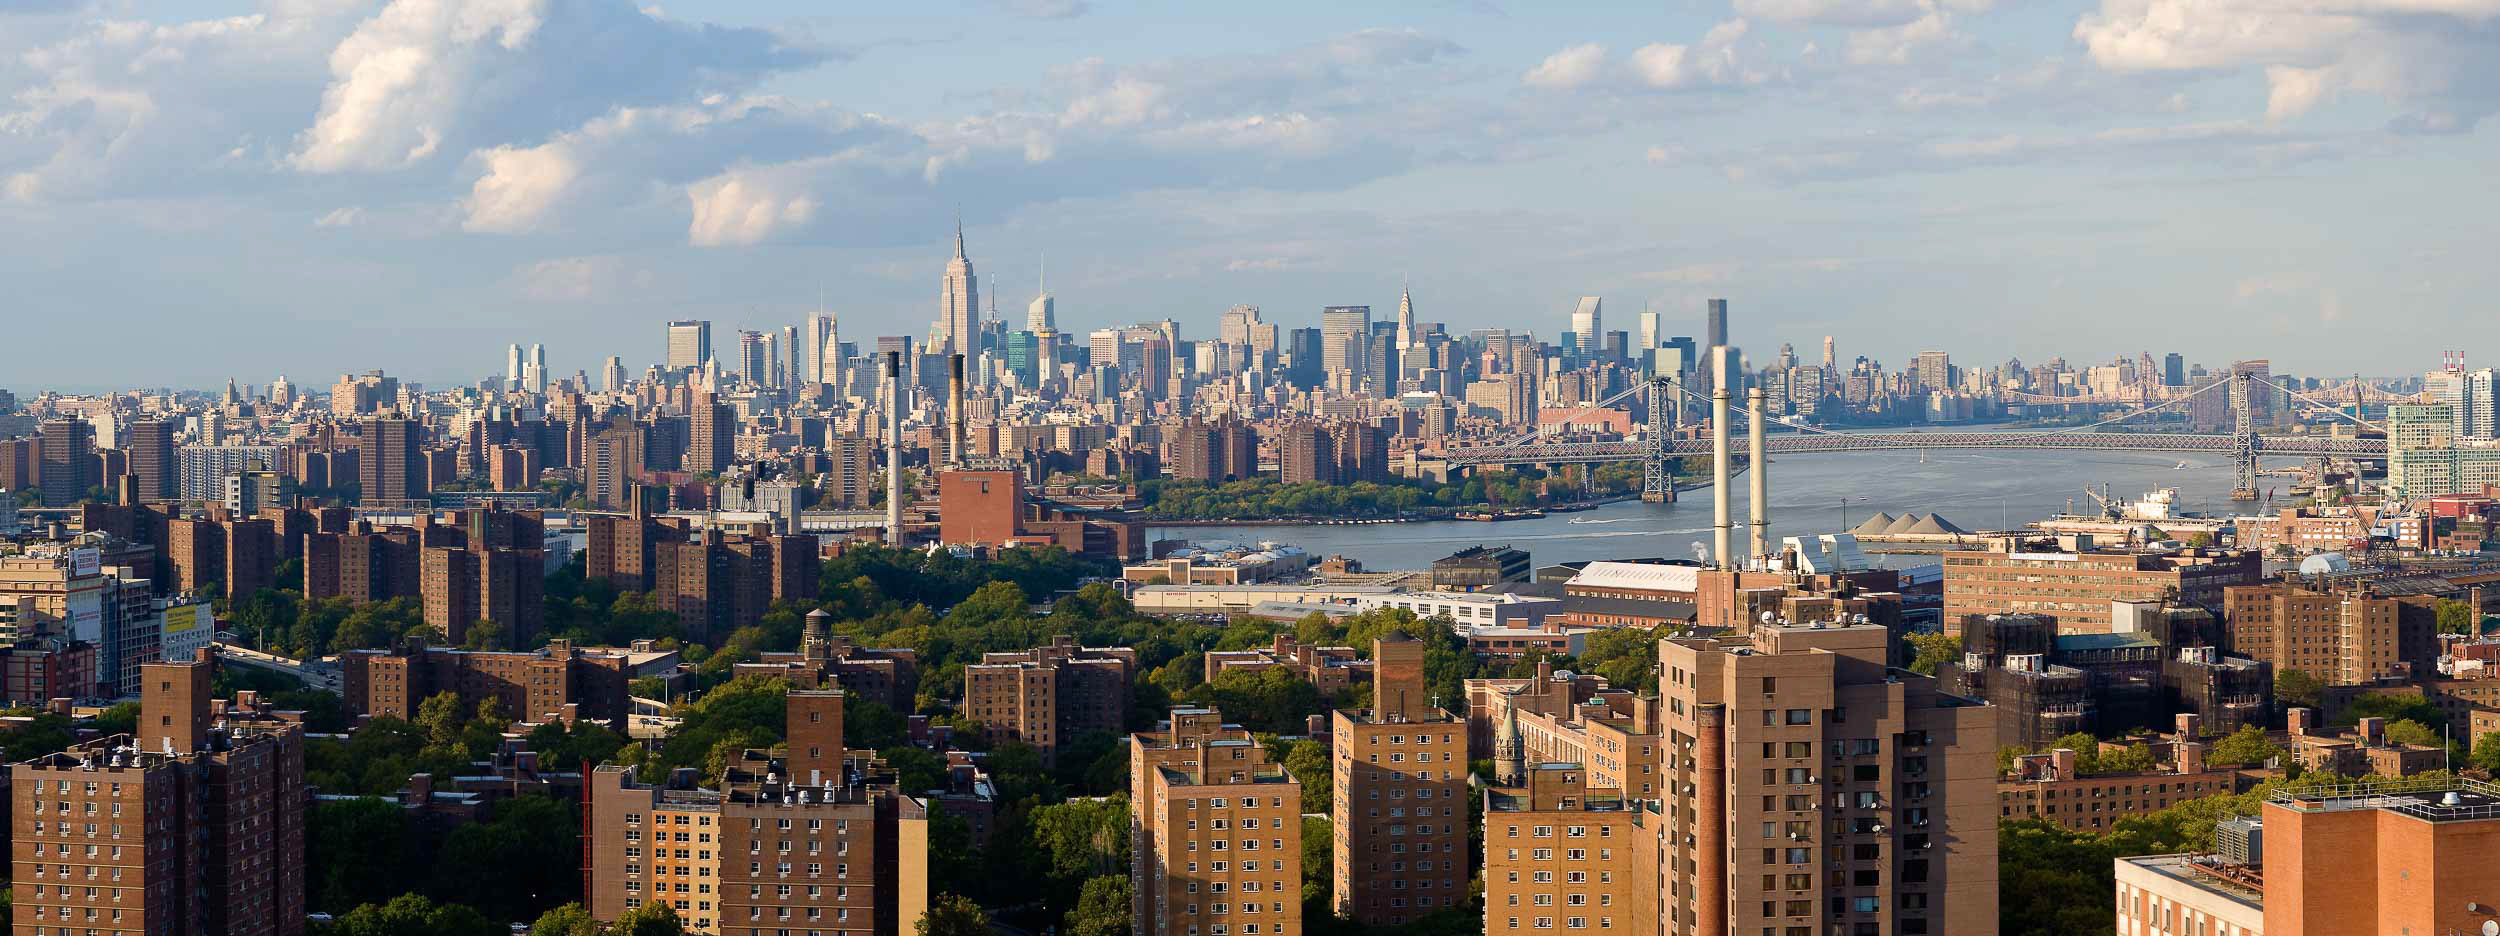 view-panoramic-cityscape-manhattan-new-york-city-usa-america